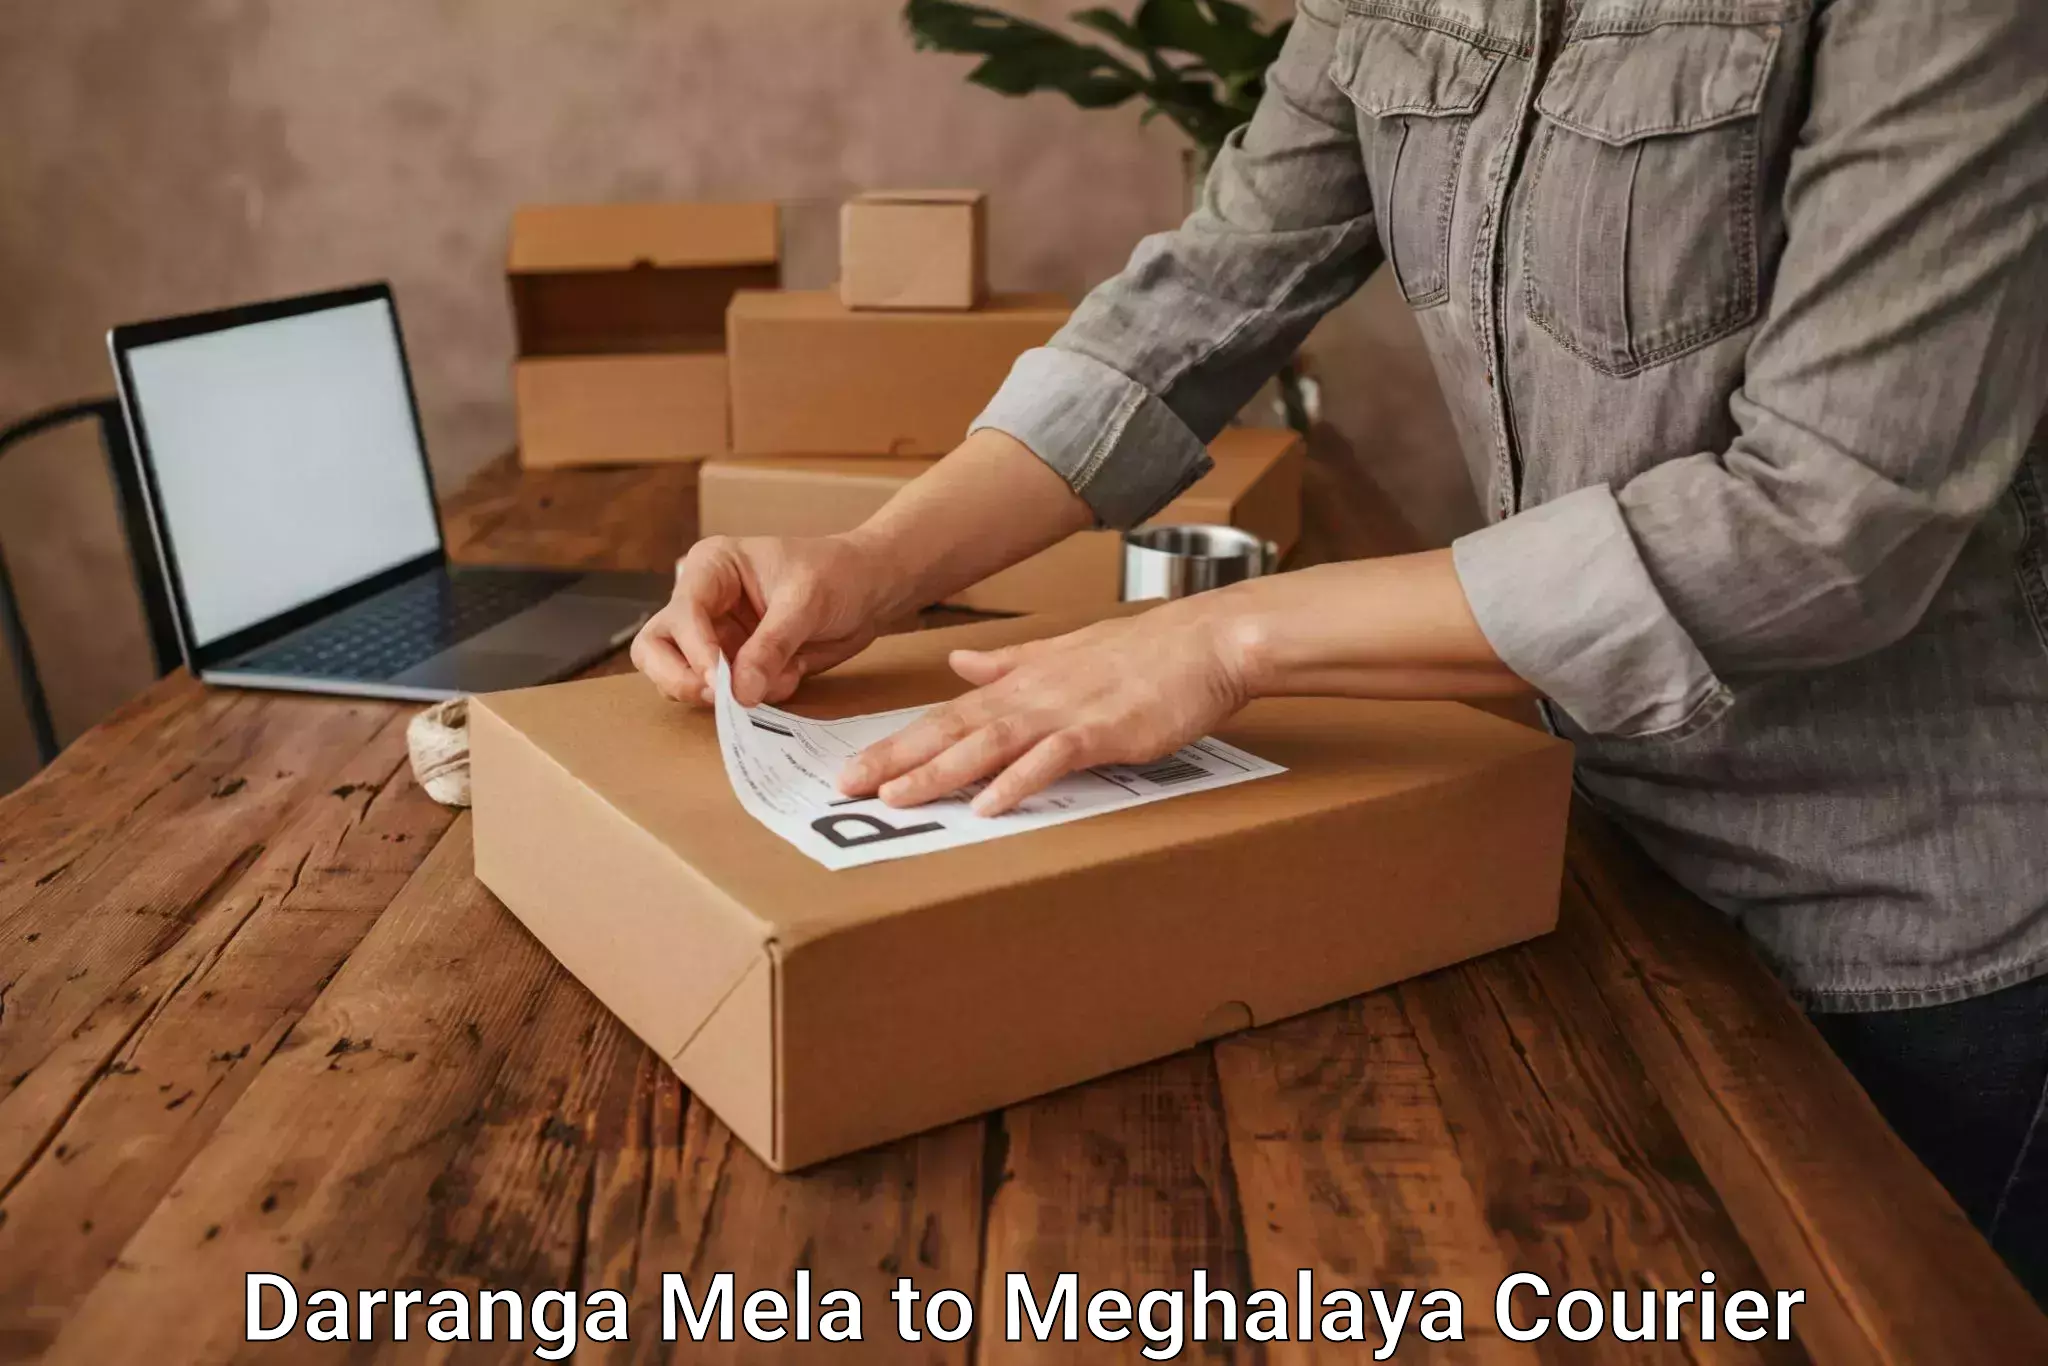 24/7 courier service Darranga Mela to Cherrapunji